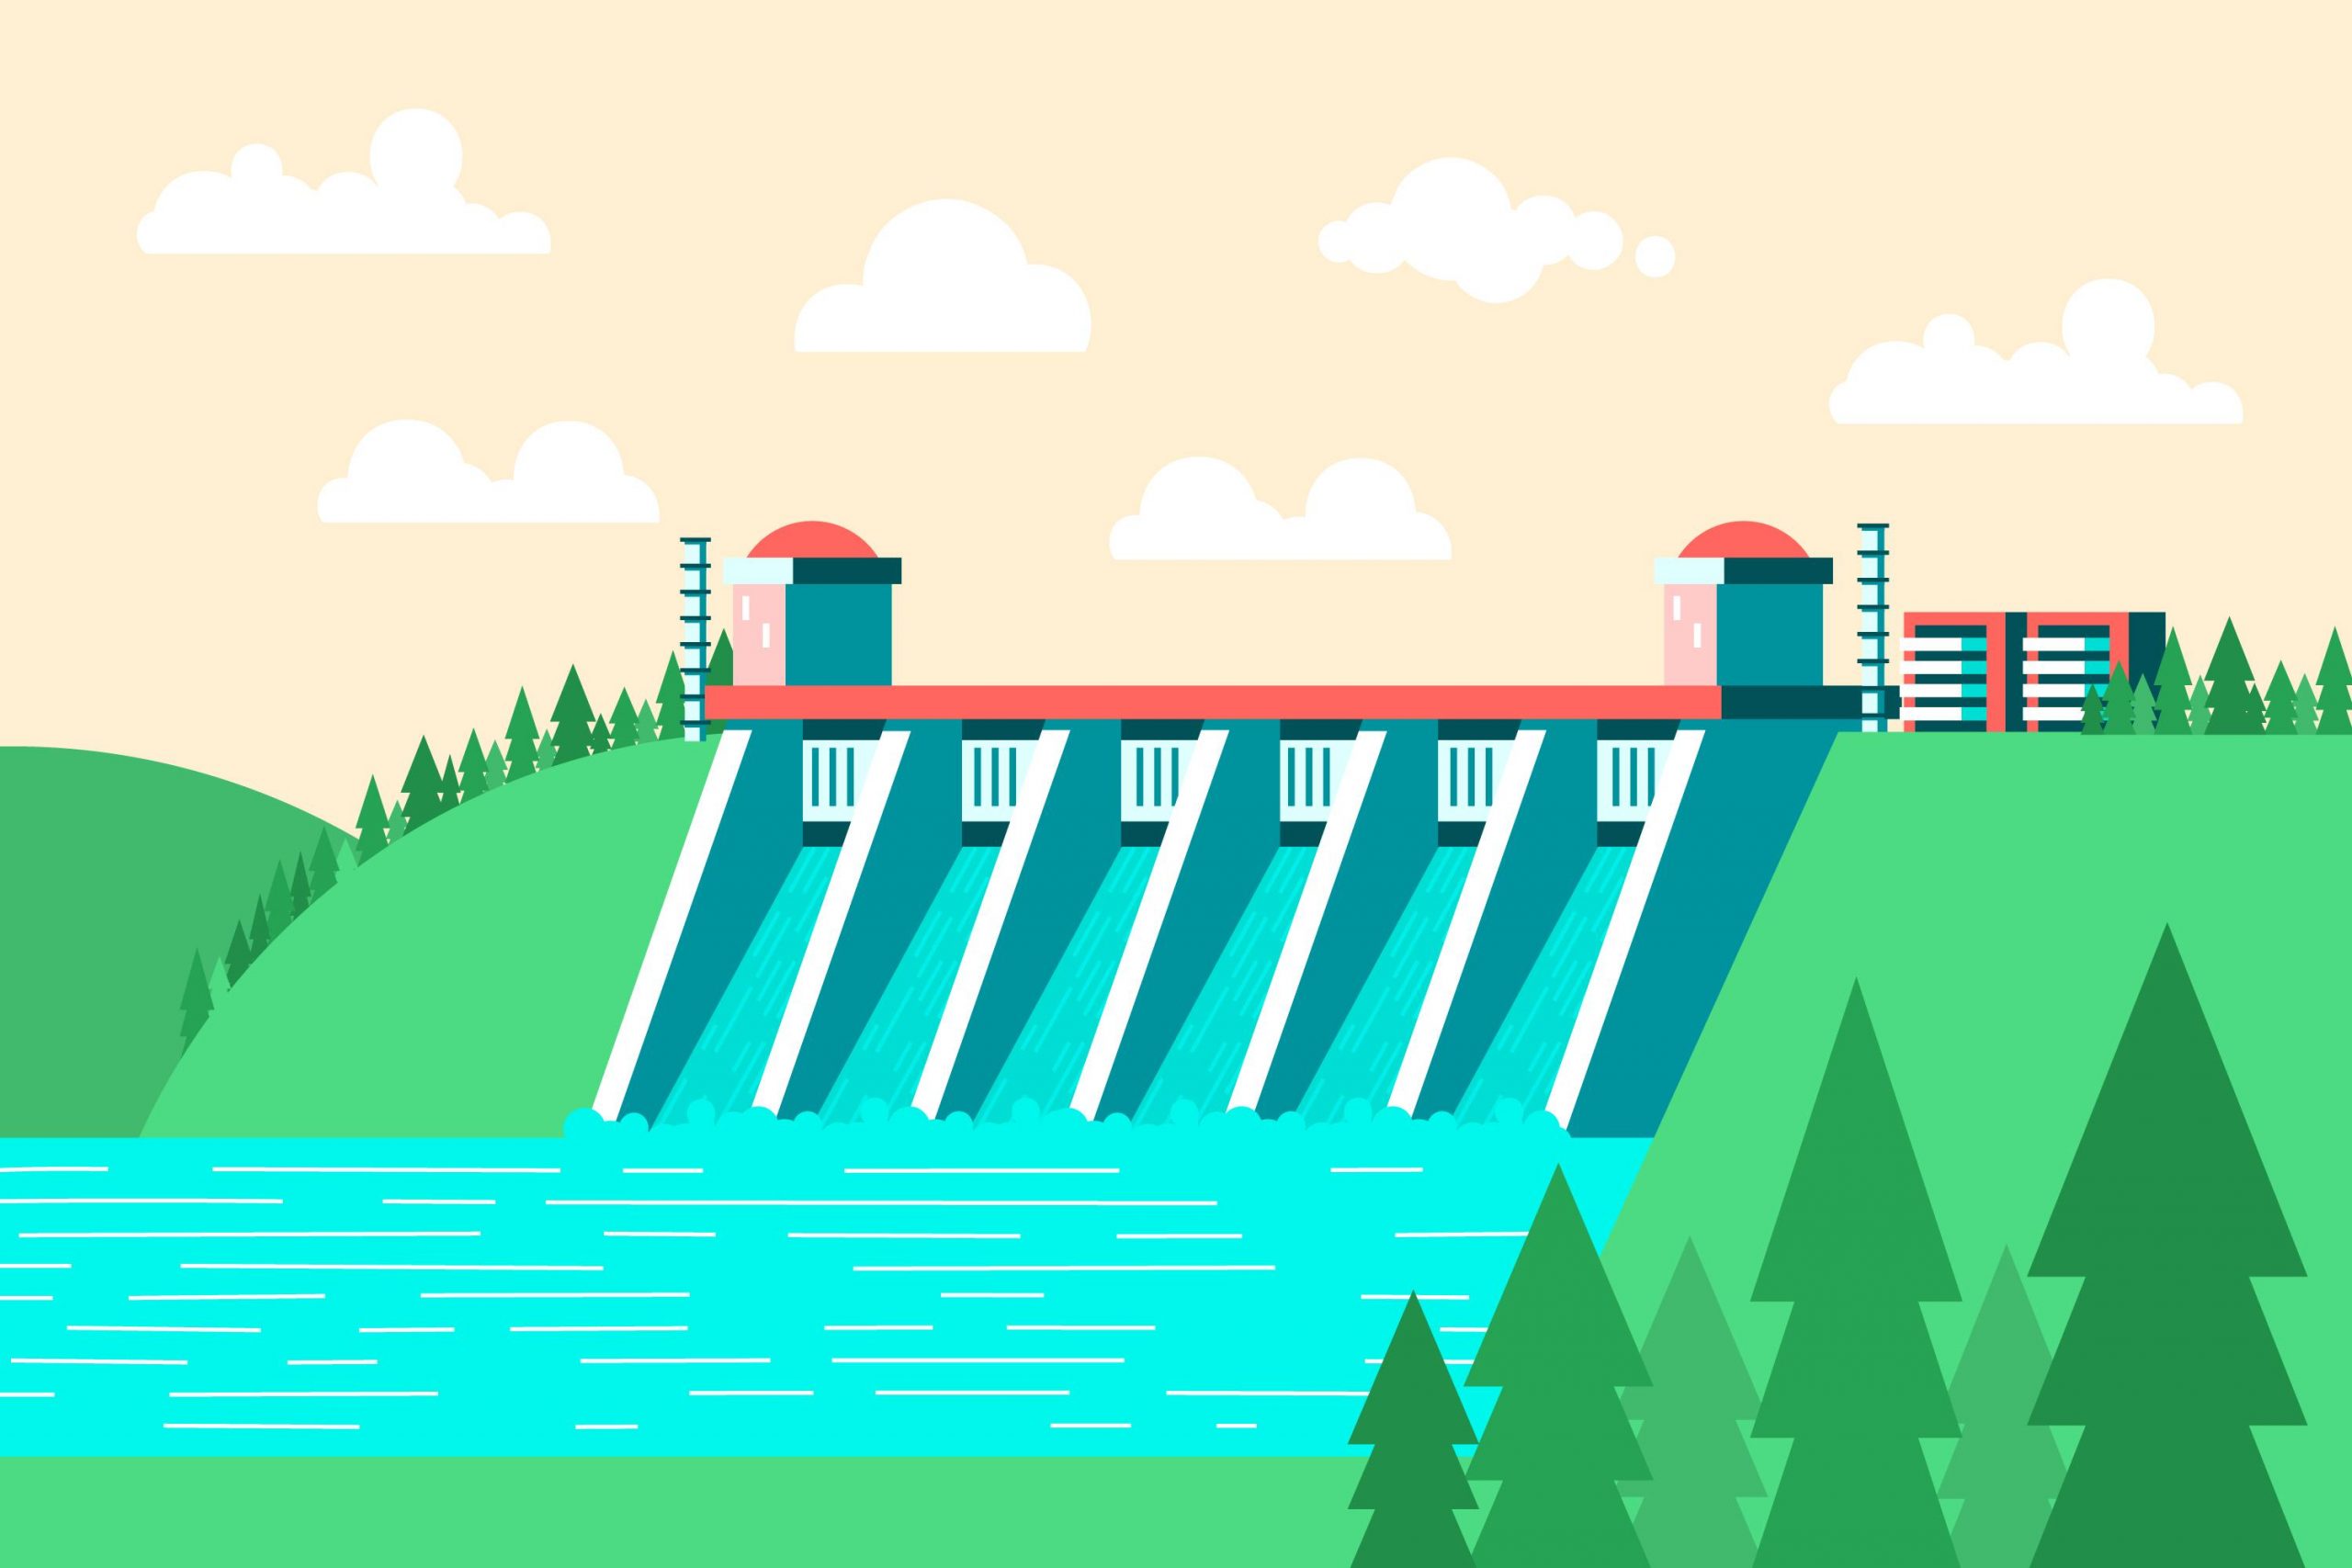 Ilustração estilizada de uma barragem hidrelétrica. A barragem é representada com grandes comportas abertas por onde a água está fluindo para um rio abaixo.